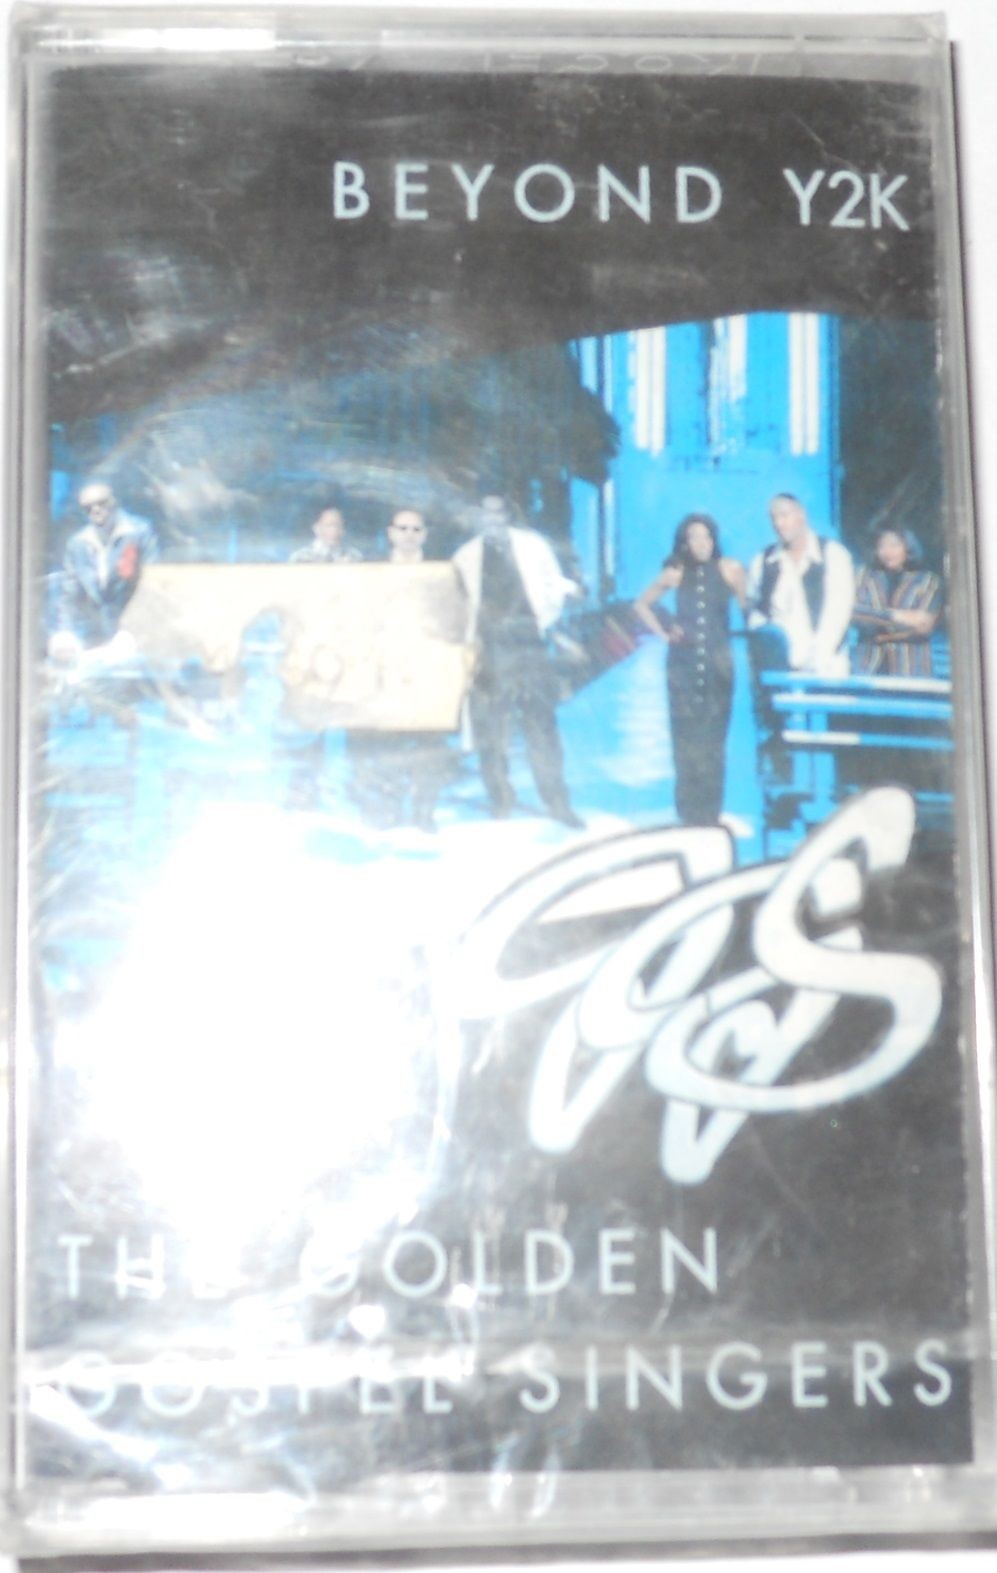 THE GOLDEN GOSPEL SINGERS  -  BEYOND Y2K (1998) - MC..